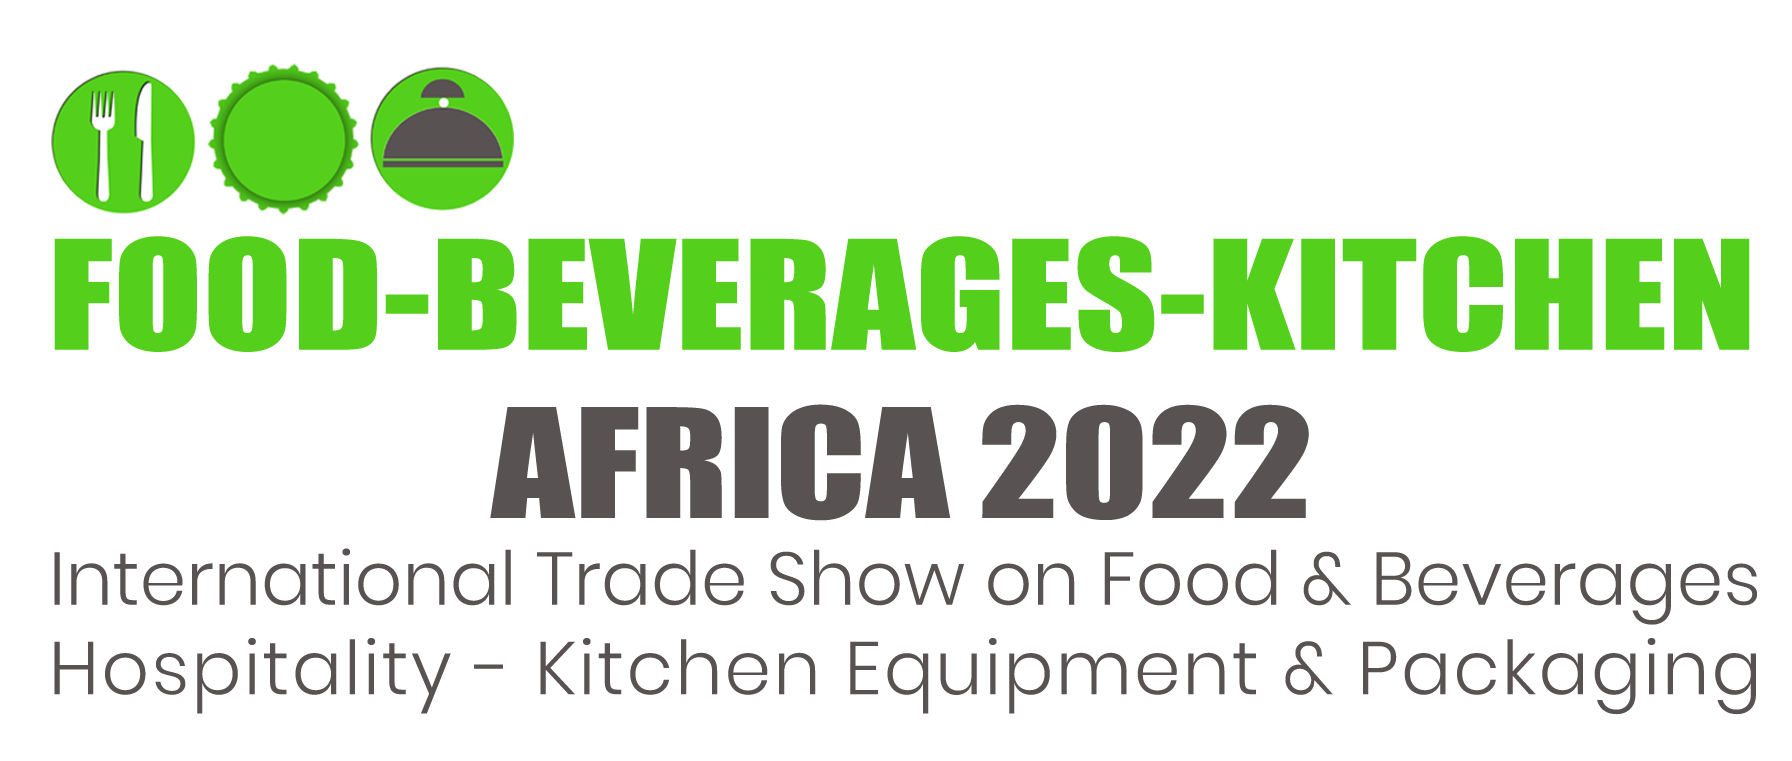 Food-Beverages-Kitchen East Africa 2022